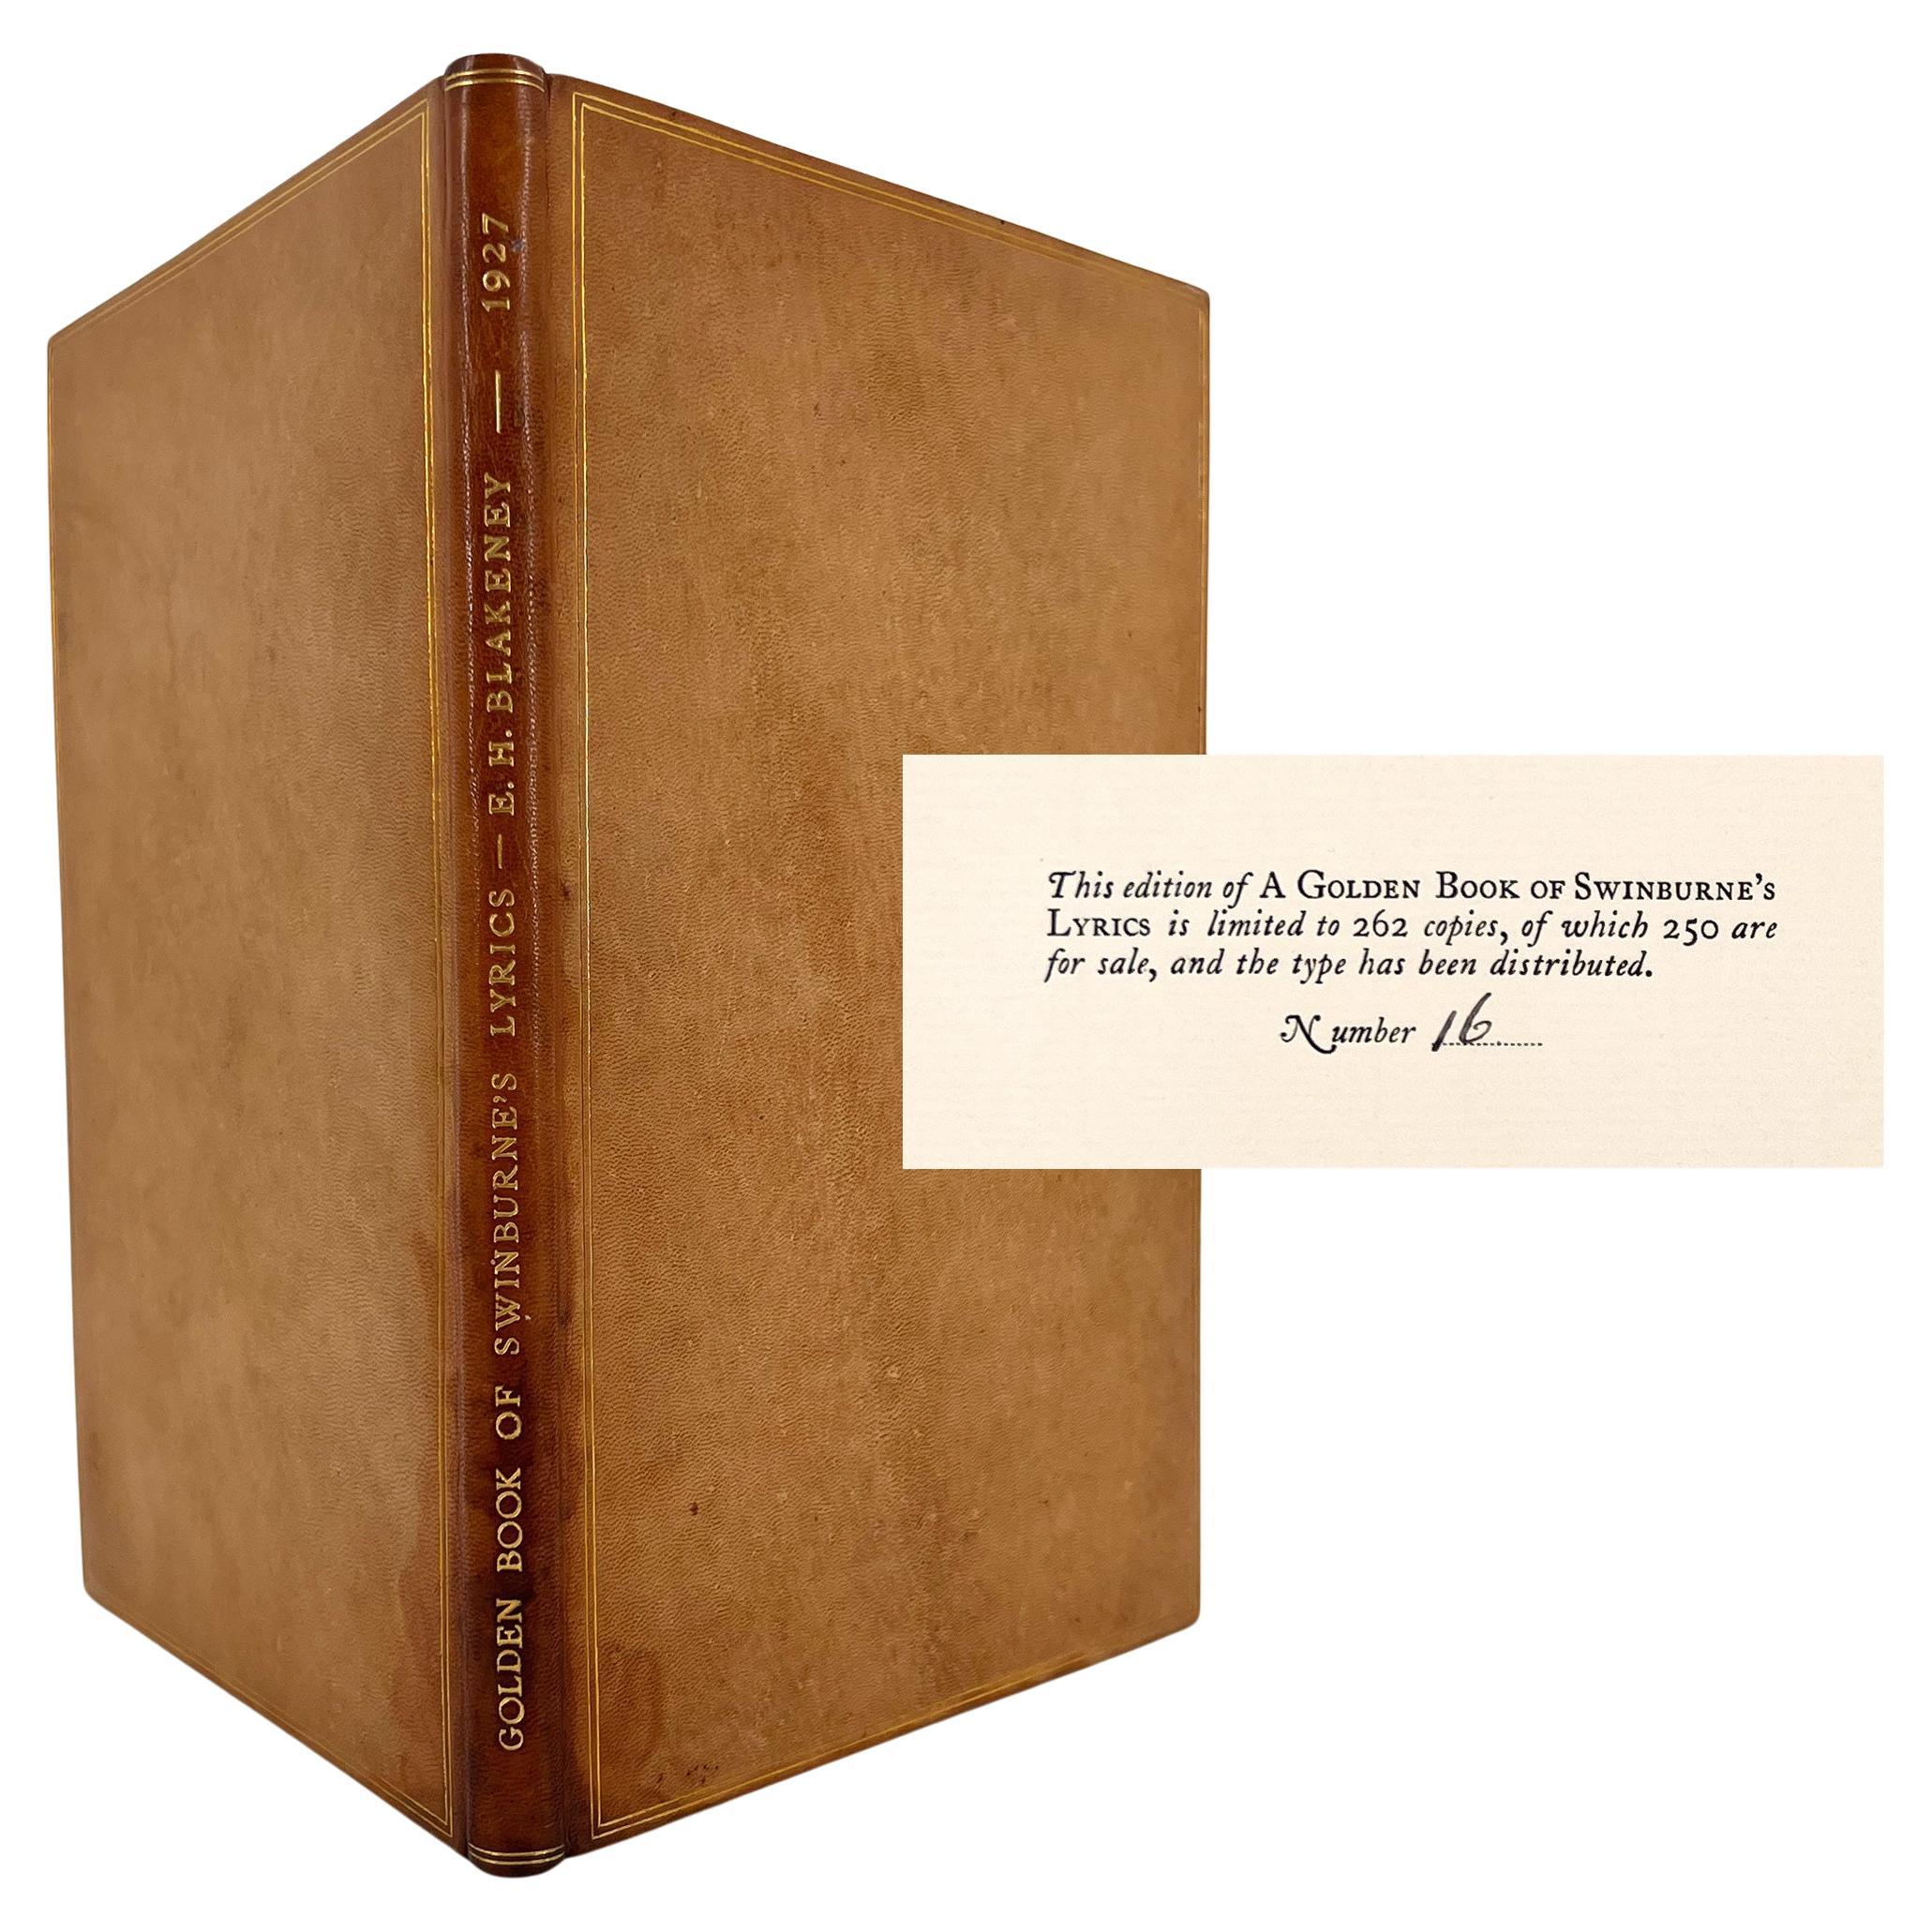 The Golden Book of Swinburne's Lyrics For Sale